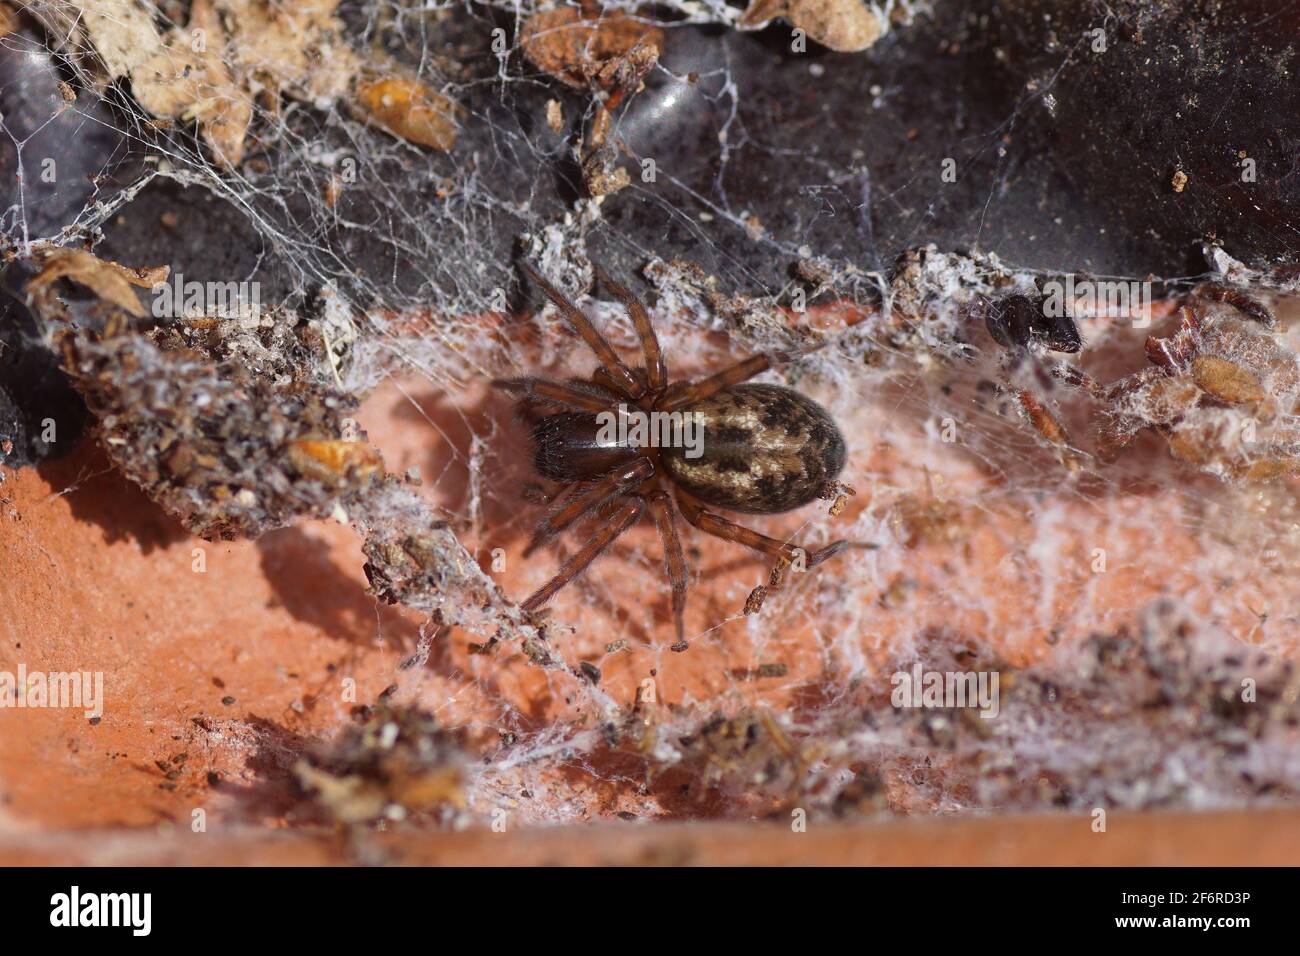 Sous des toiles d'araignée décolorées et sous un carreau de toit sur le sol. Araignée de fenêtre, Amaurobius fenestralis ou Amaurobius similis. Araignées à nid enchevêtrées de famille Banque D'Images